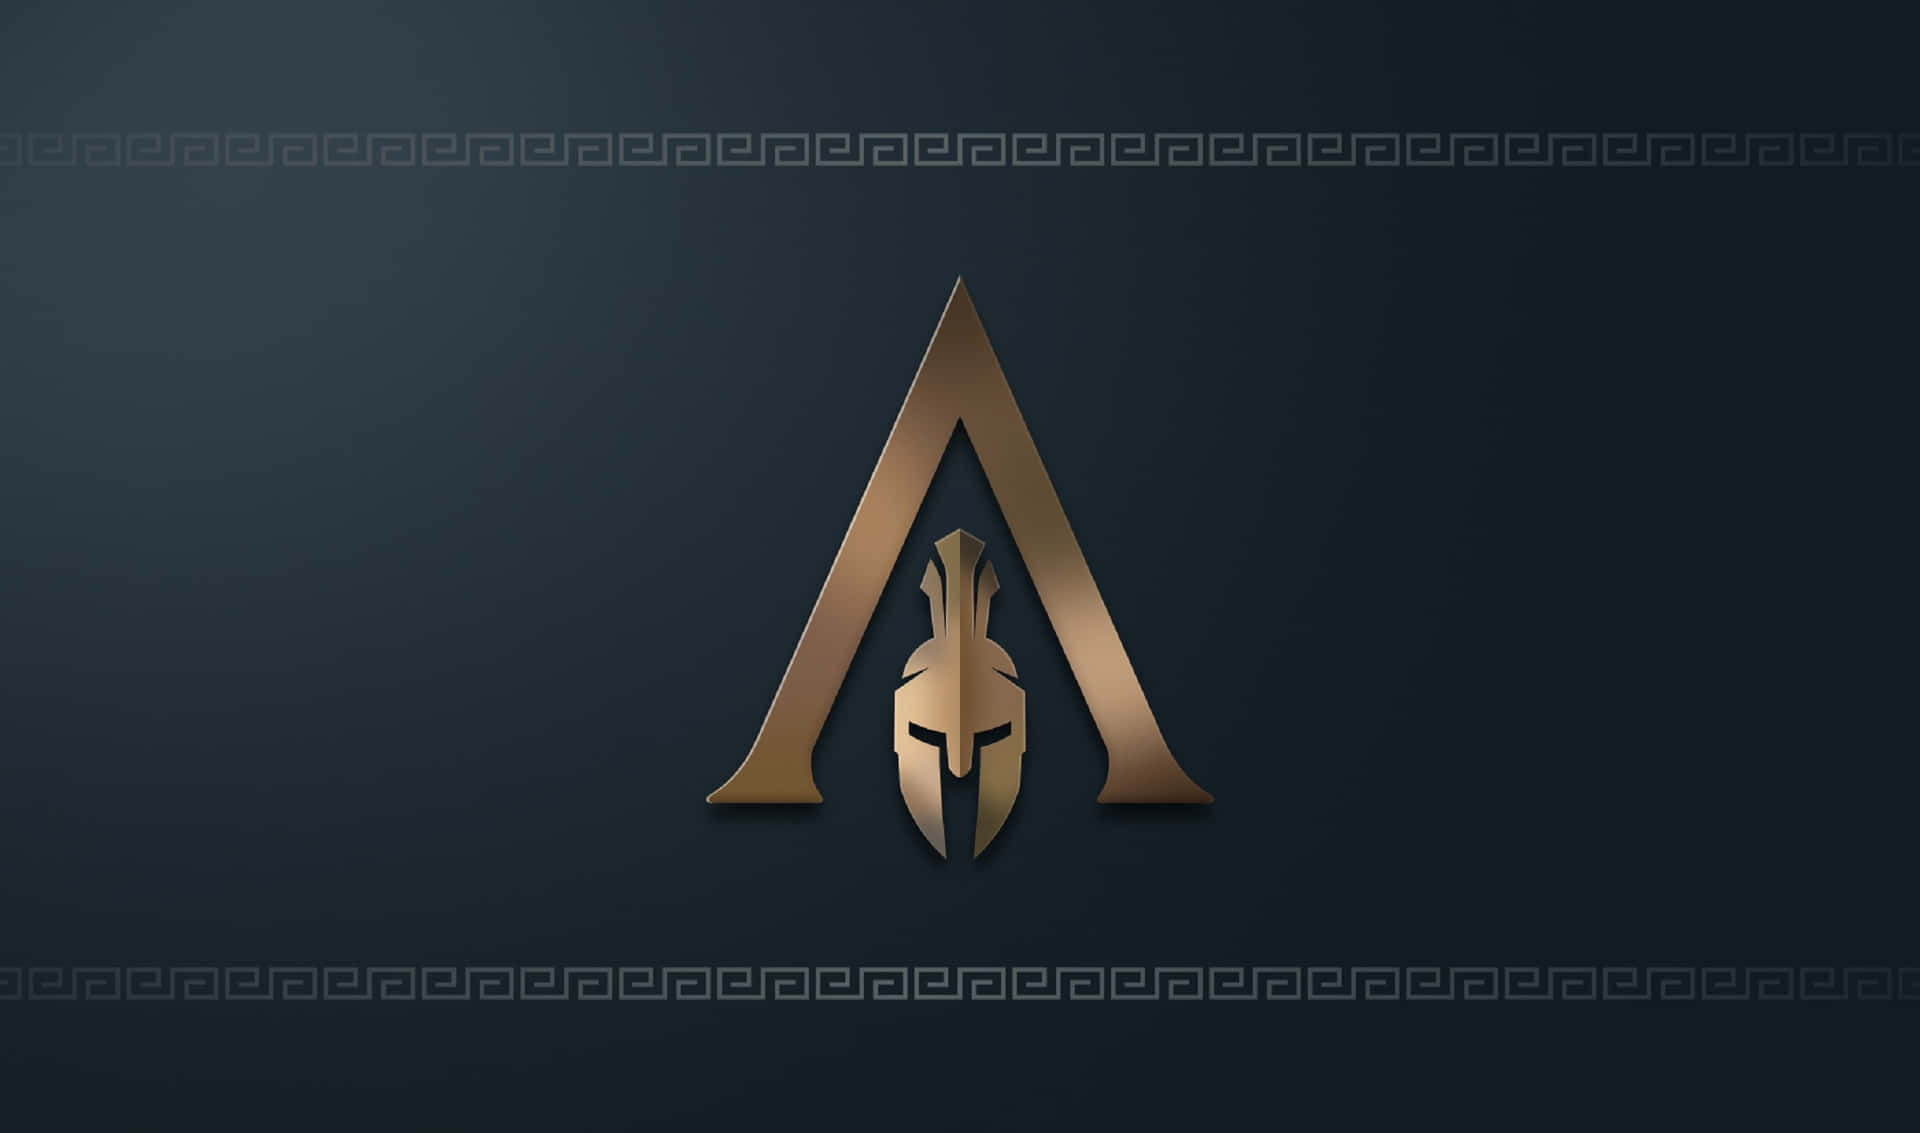 Papelde Parede Assassin's Creed Odyssey De 2440x1440 Com O Logotipo Dos Assassinos.